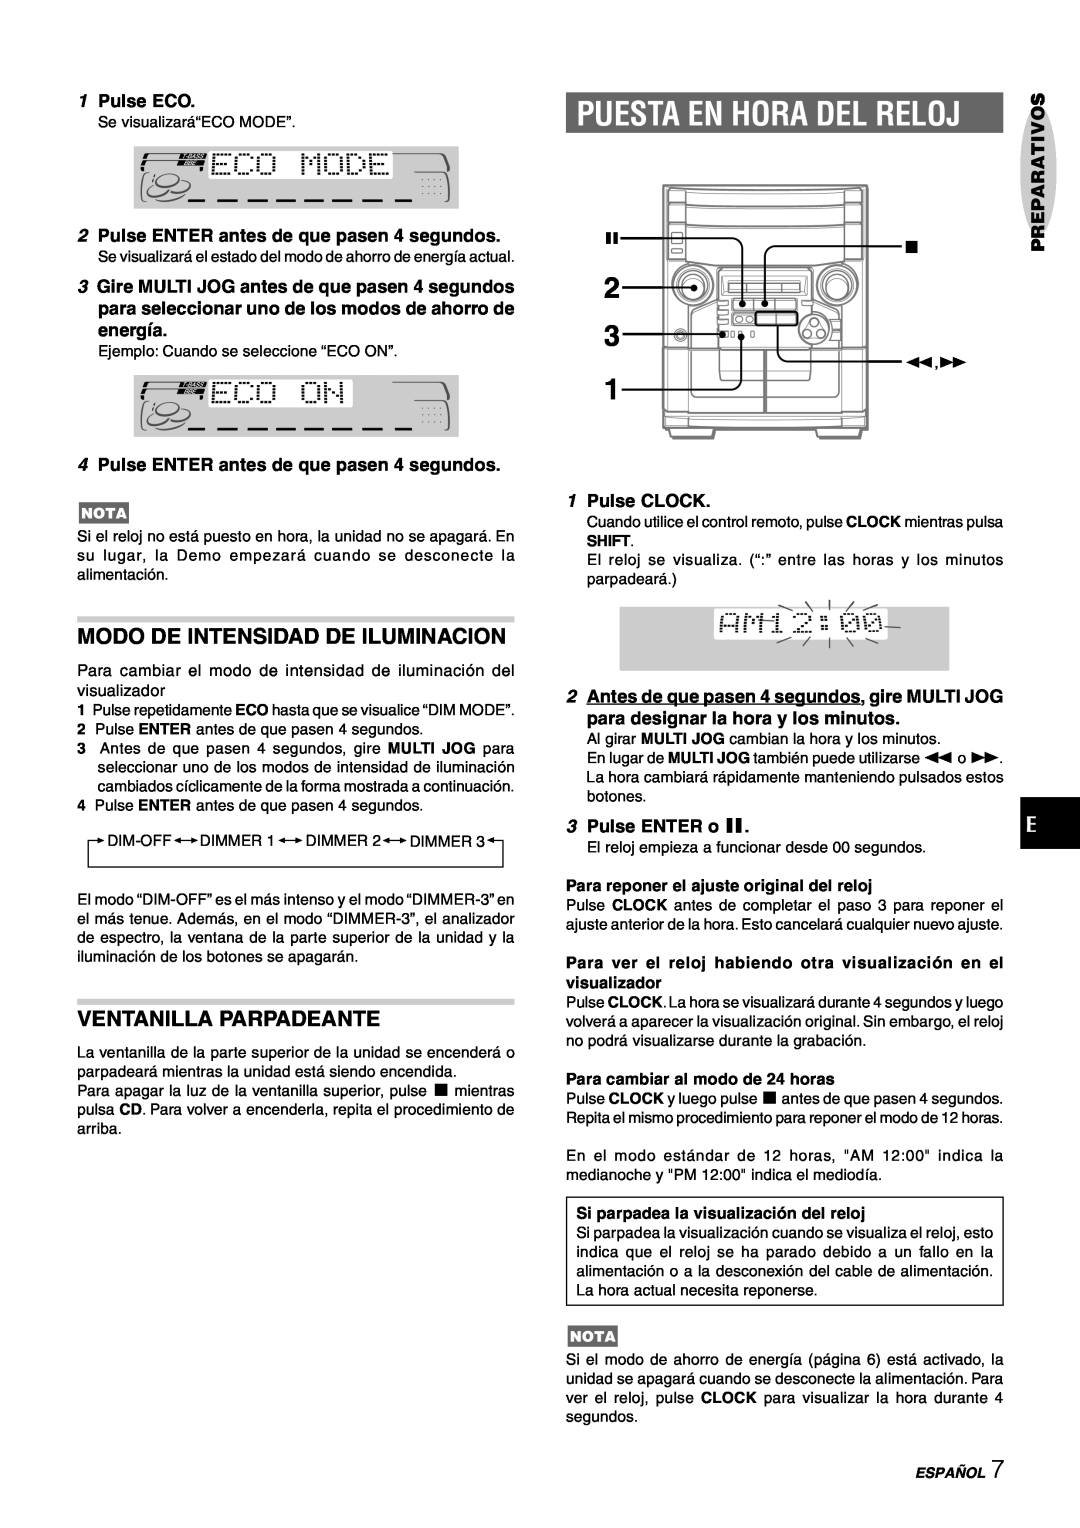 Aiwa CX-NAJ54 manual Modo De Intensidad De Iluminacion, Ventanilla Parpadeante, Puesta En Hora Del Reloj 